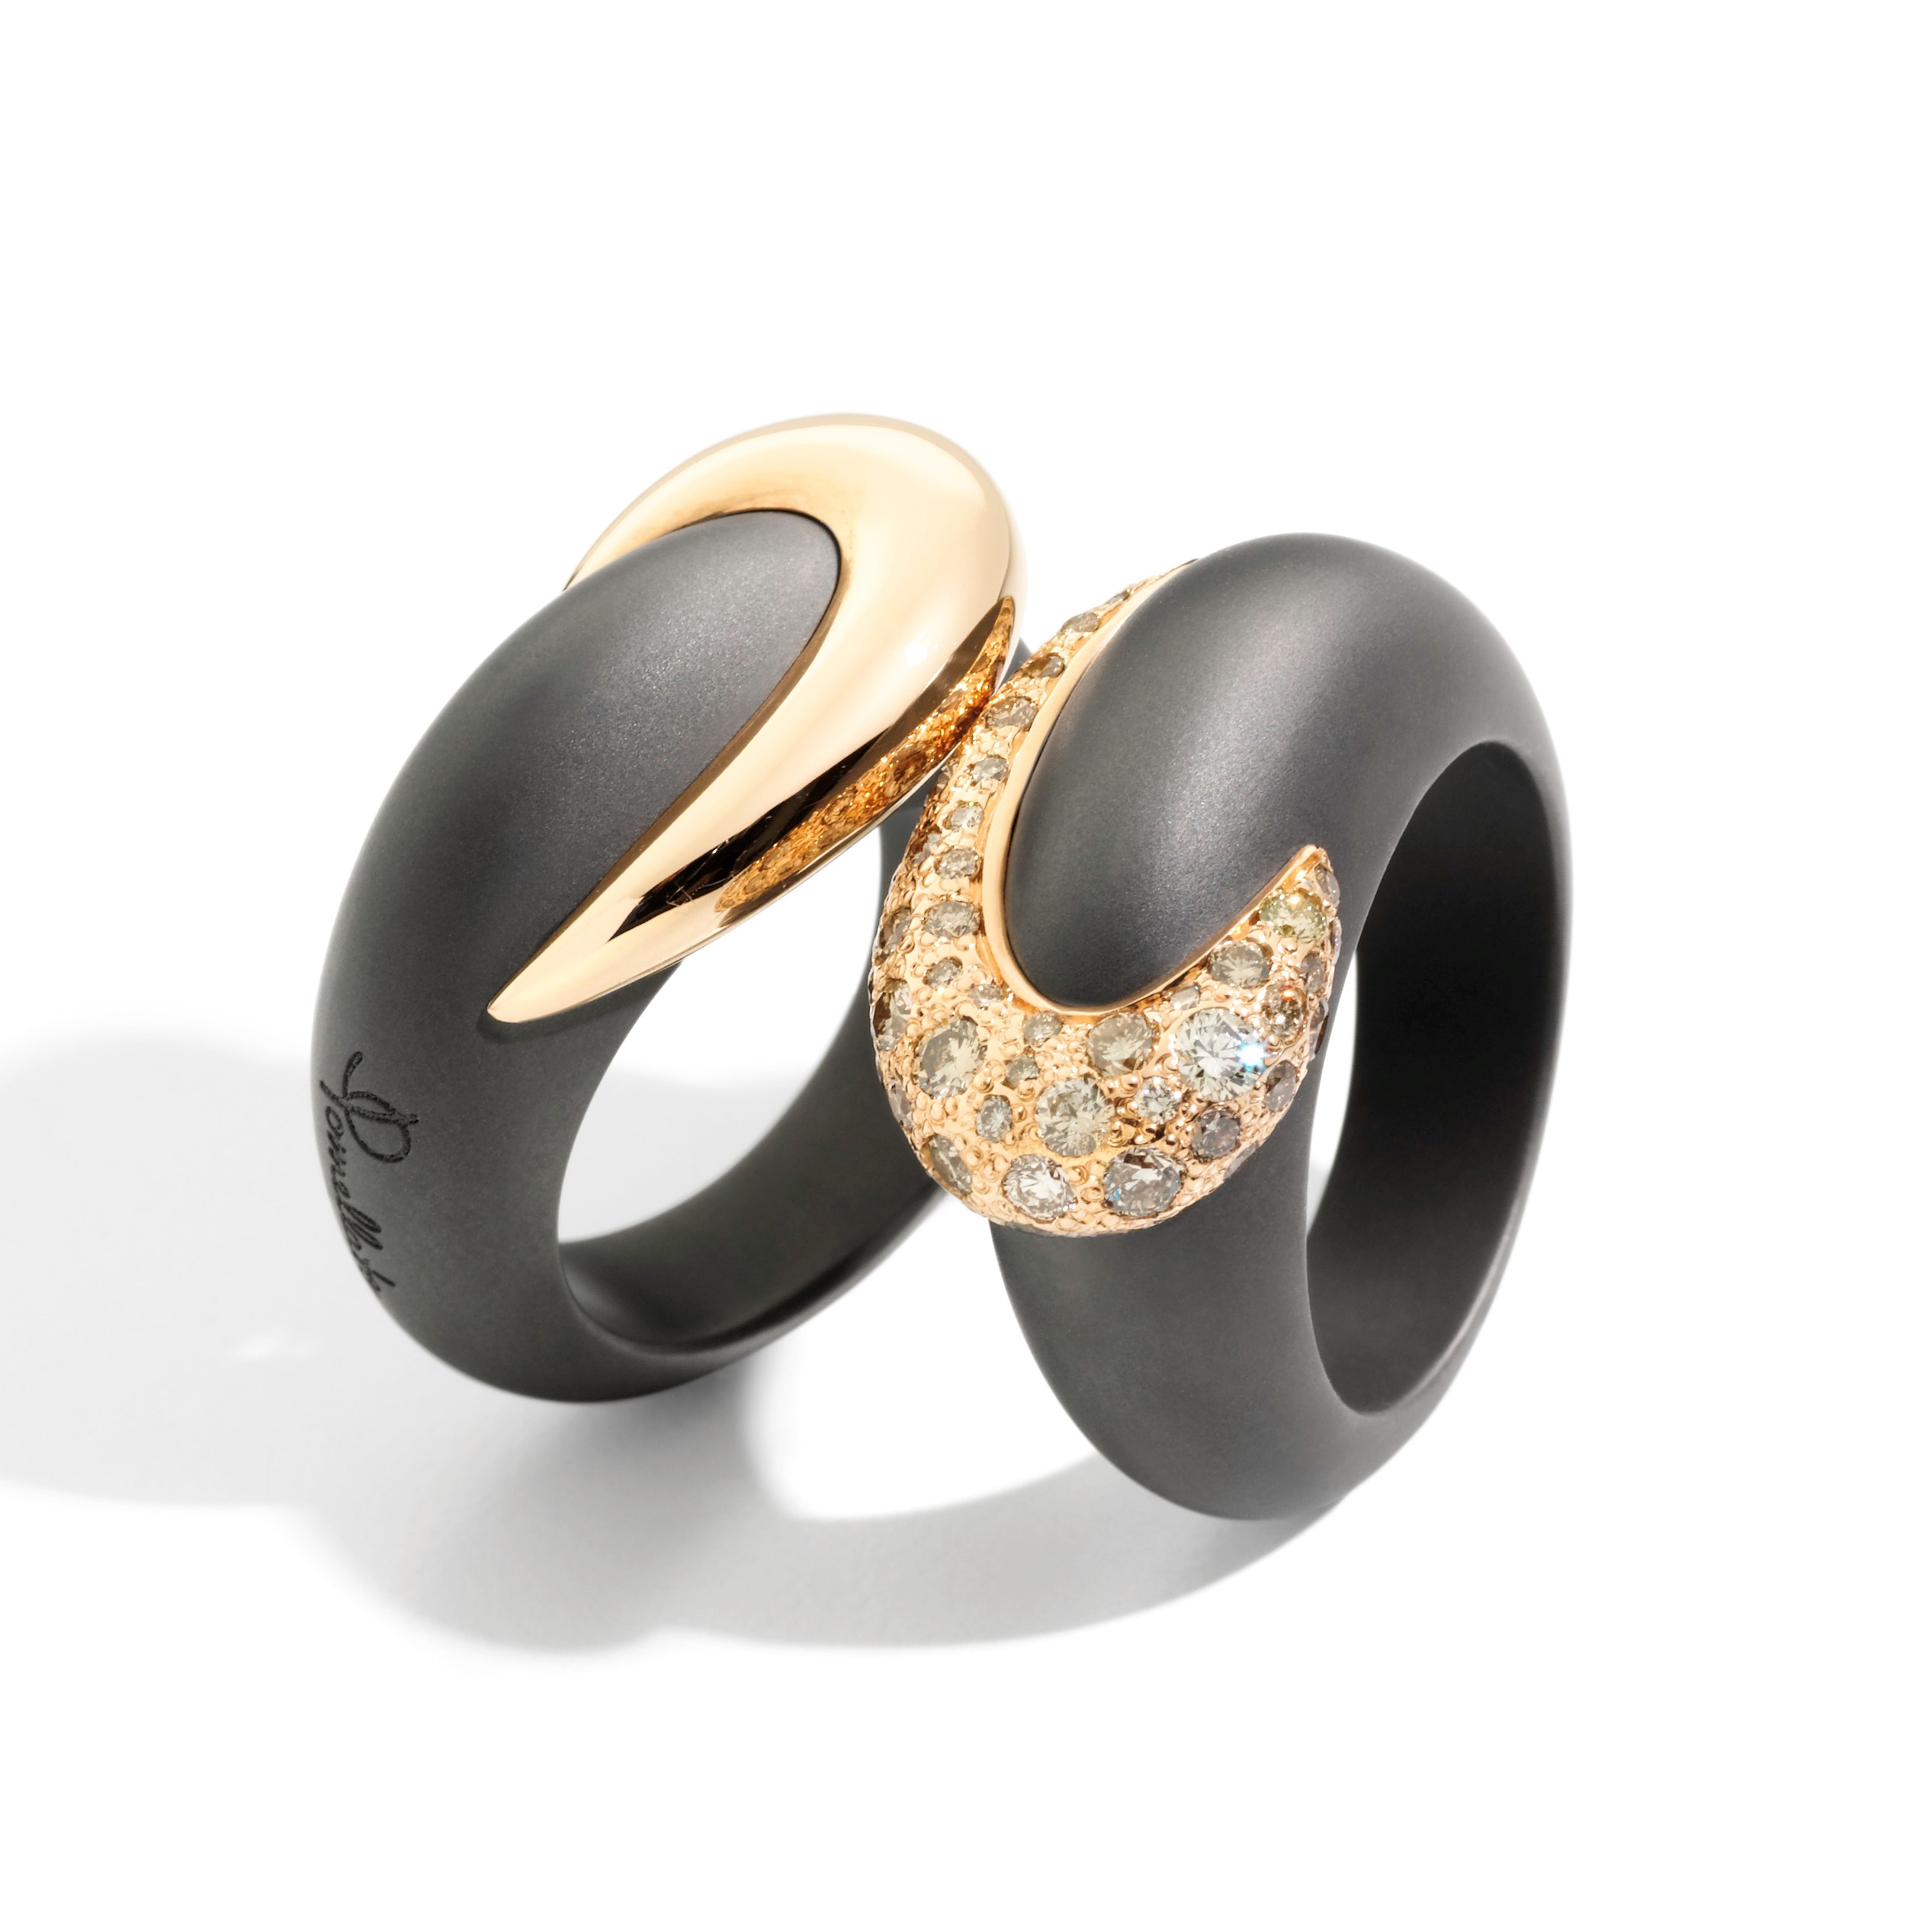 Titanio rings by Pomellato